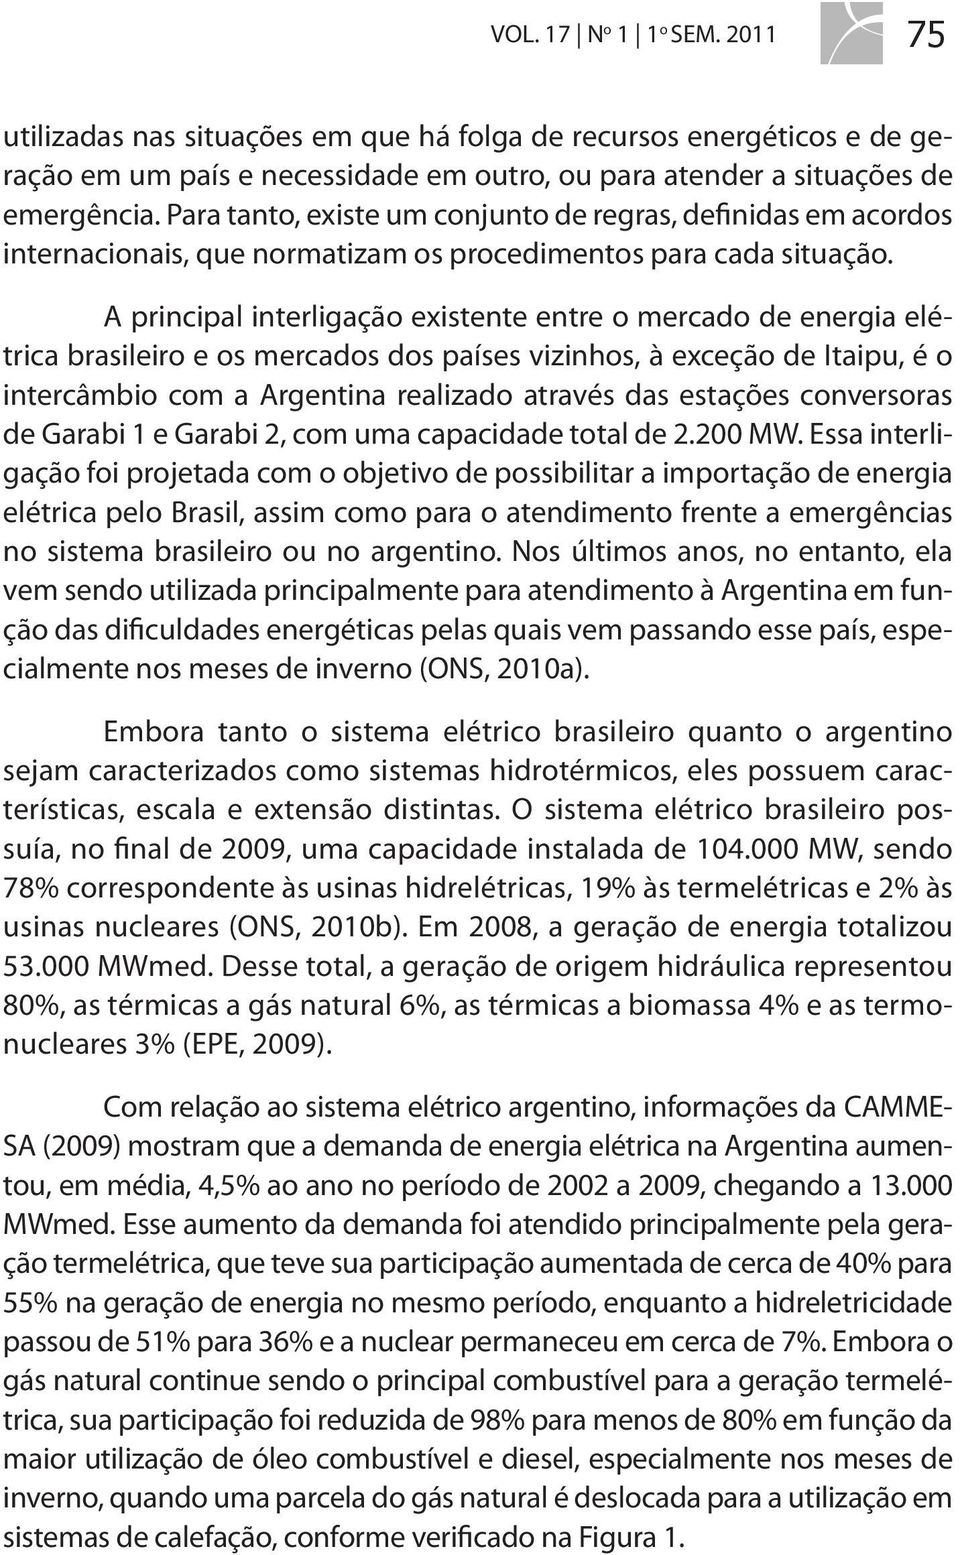 A principal interligação existente entre o mercado de energia elétrica brasileiro e os mercados dos países vizinhos, à exceção de Itaipu, é o intercâmbio com a Argentina realizado através das